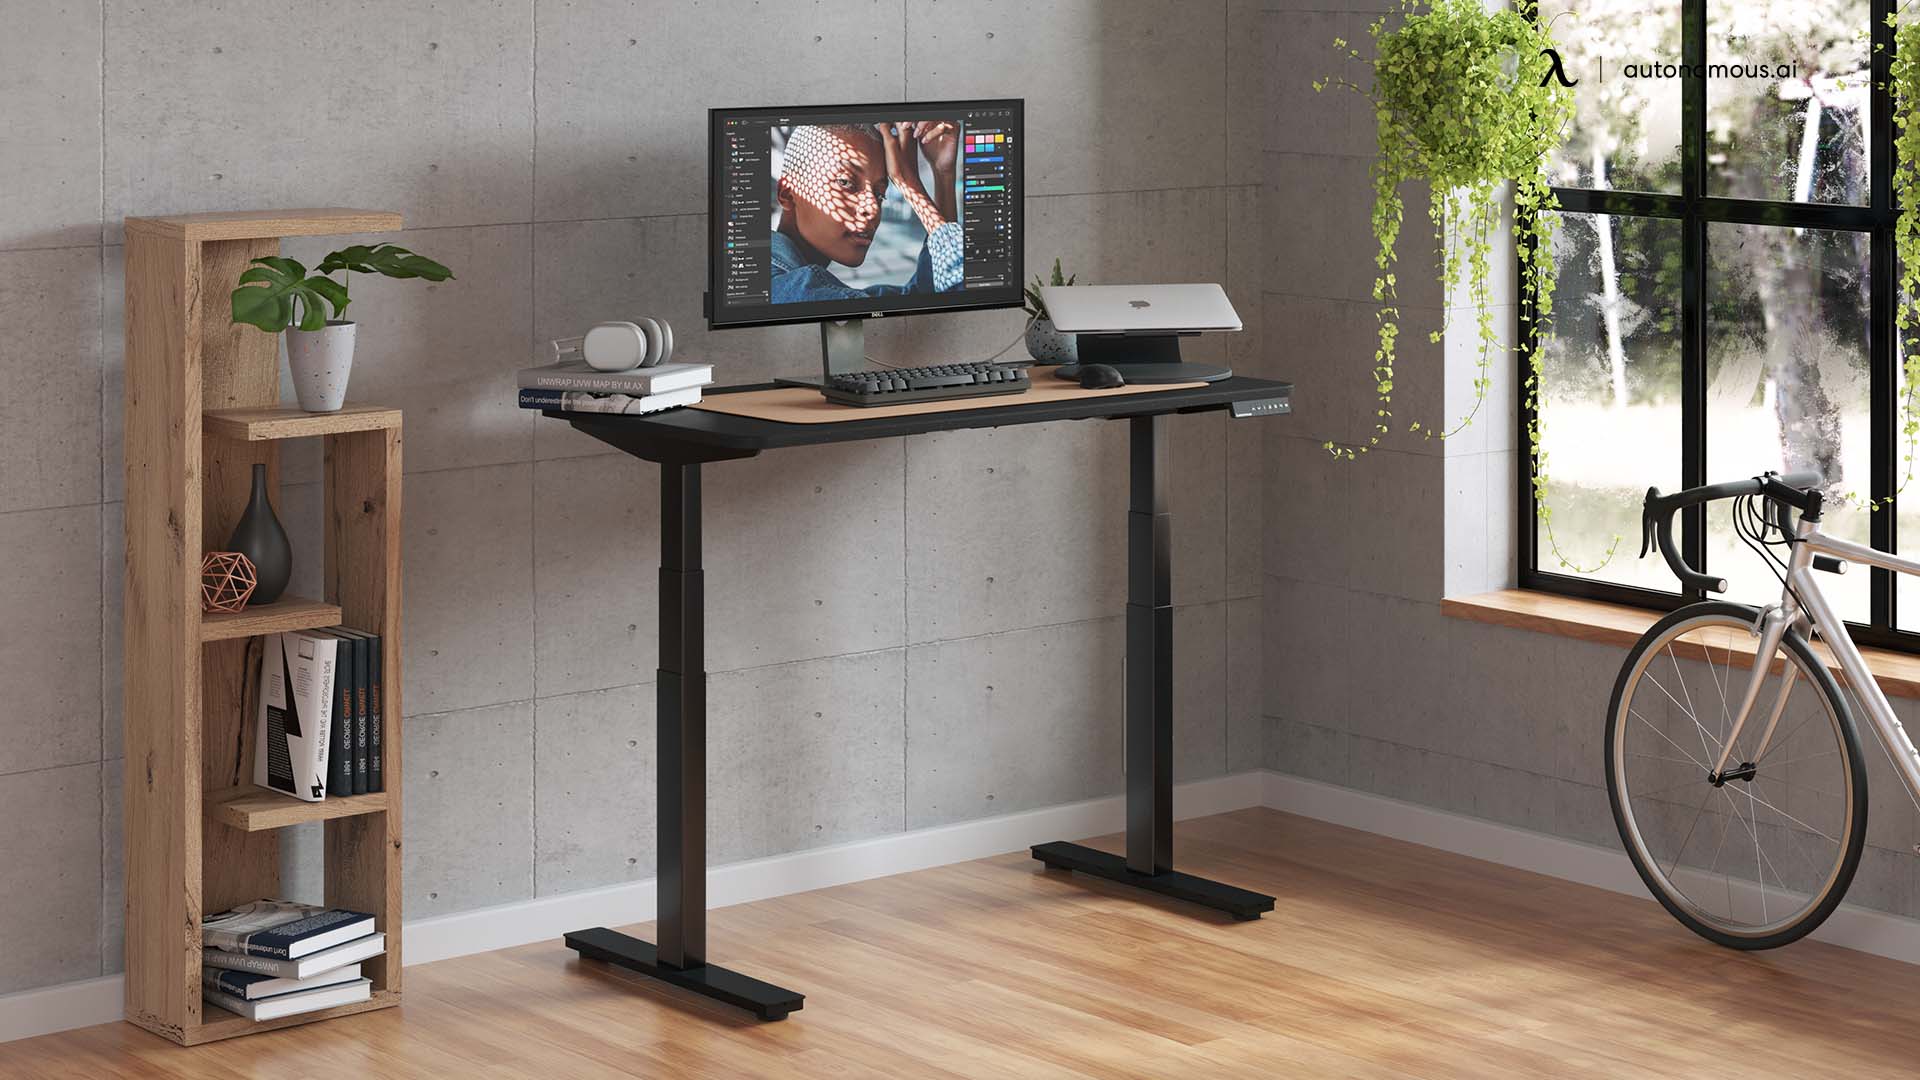 Get Good Furniture for workstation at home